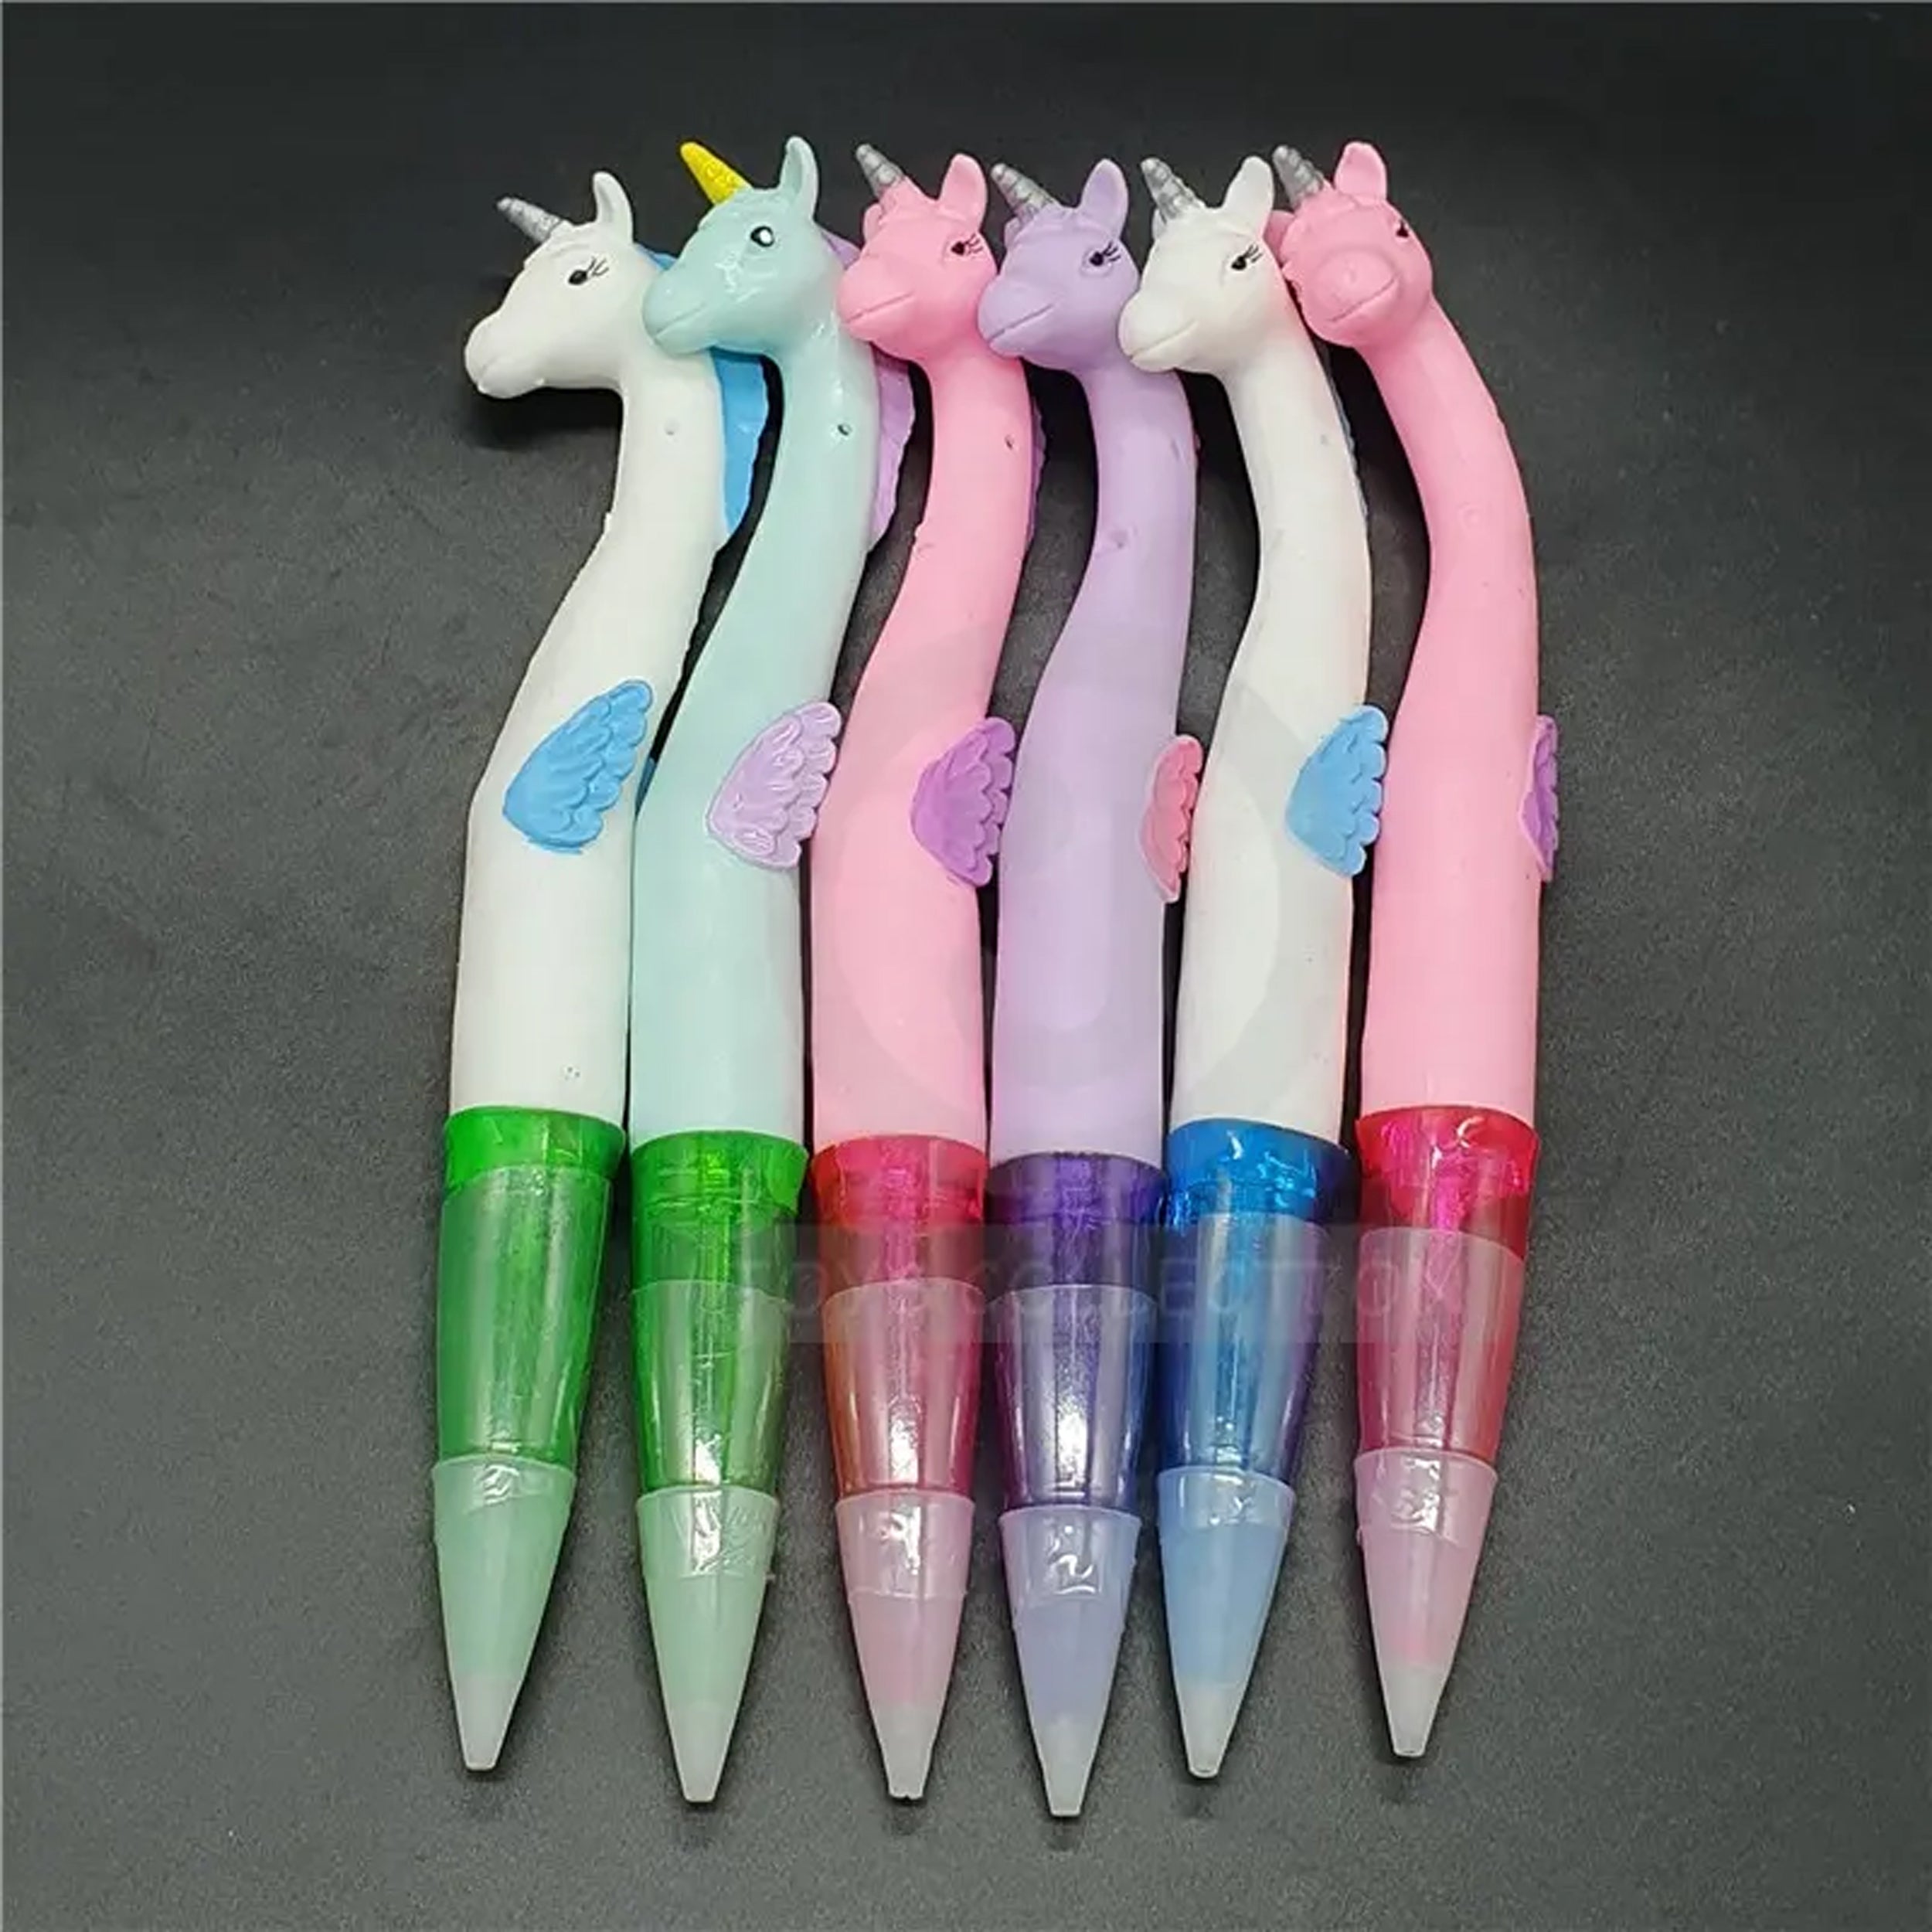 Unicorn School & Office Supply Gift Pen